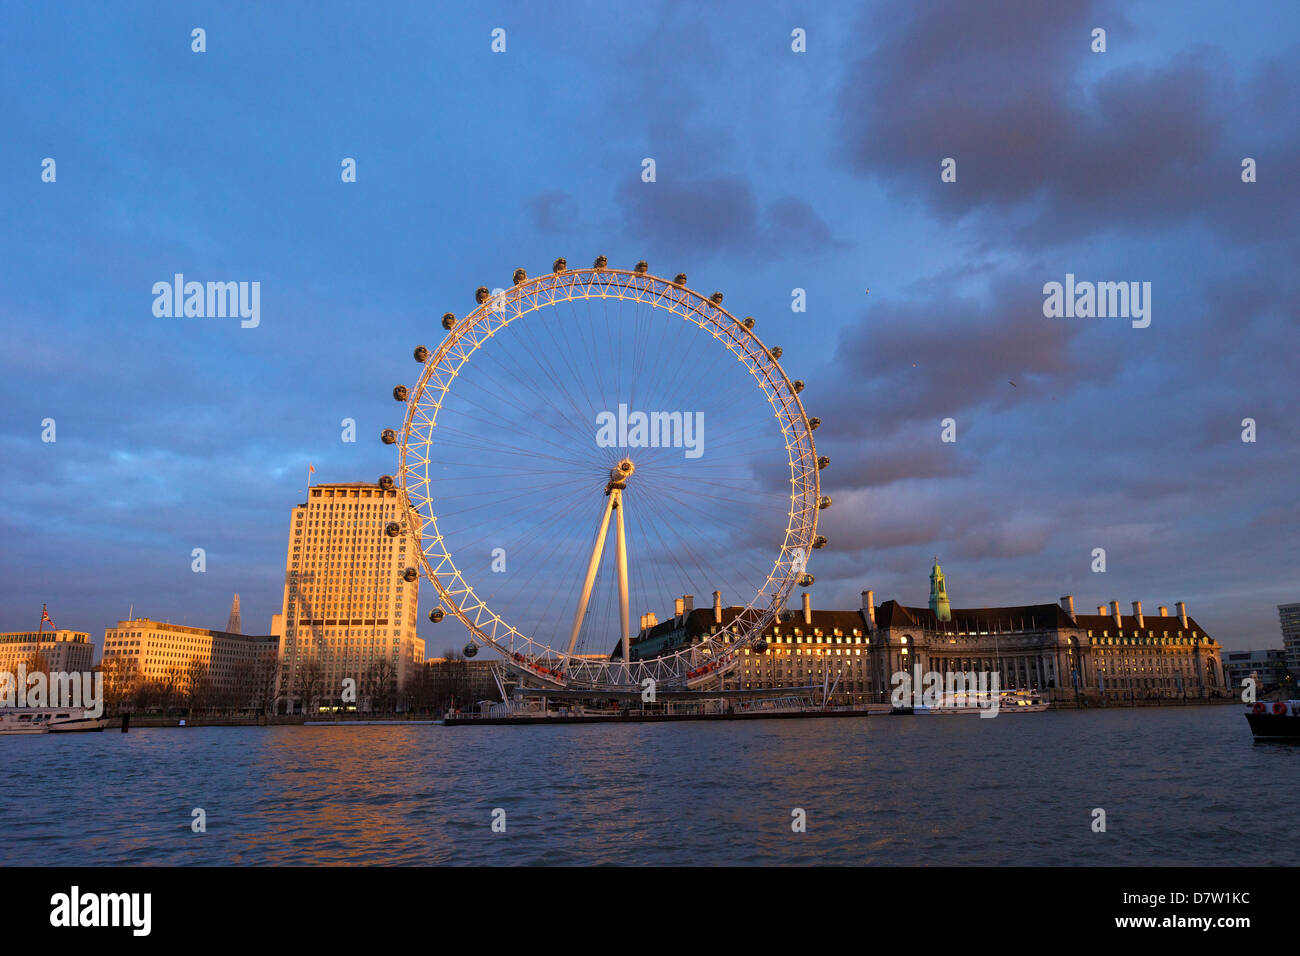 London Eye, la Tamise, et l'Hôtel de ville de Victoria Embankment au coucher du soleil, Londres, Angleterre, Royaume-Uni Banque D'Images